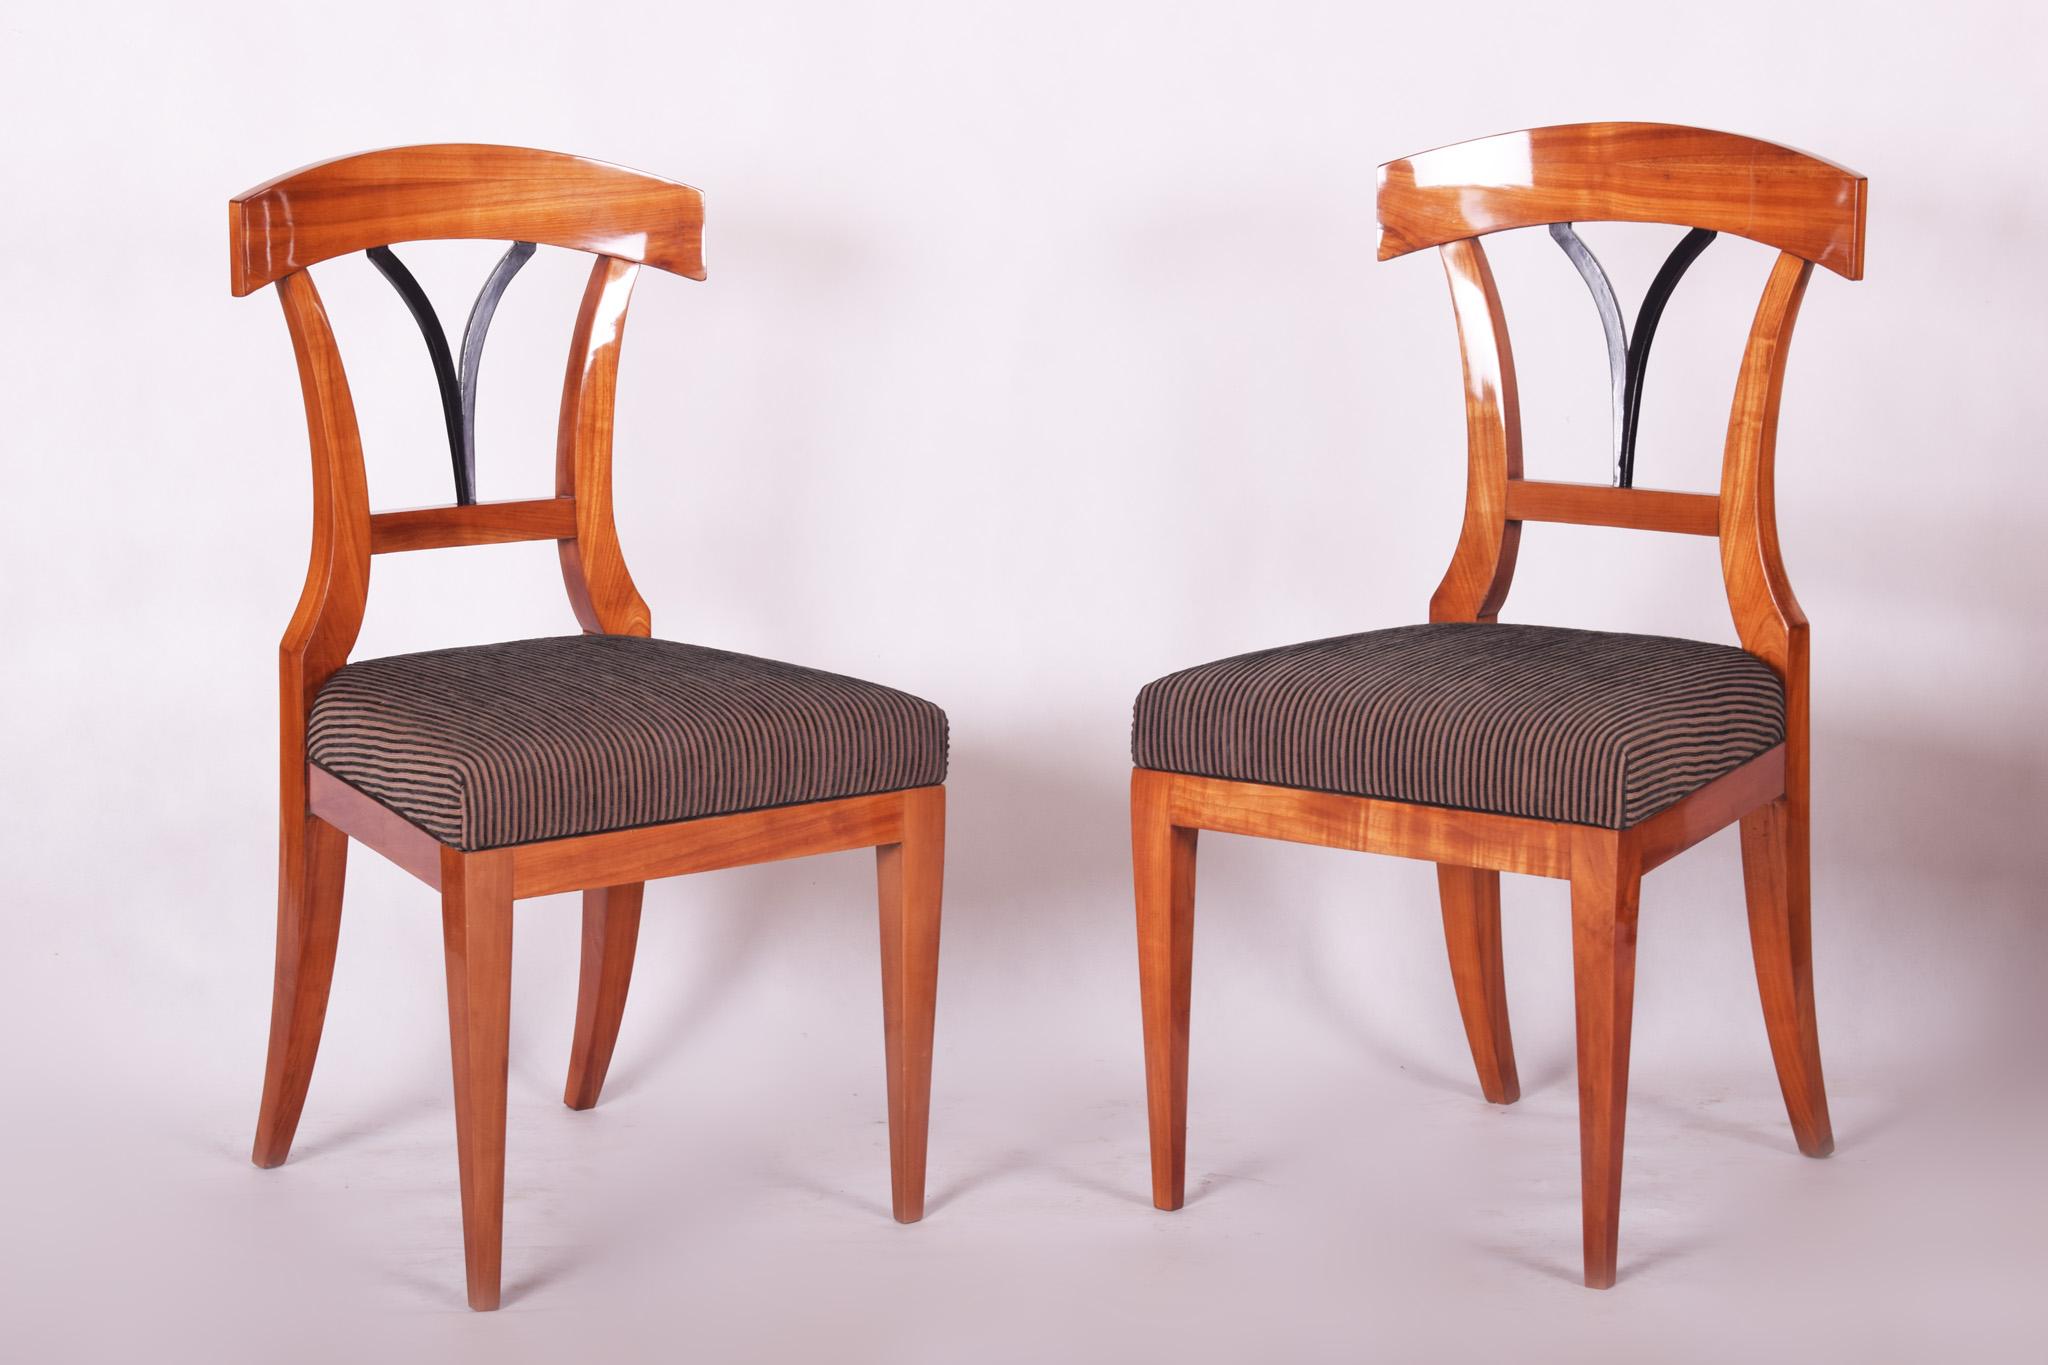 Die Stühle wurden vollständig restauriert und sind aus Kirschbaumholz gefertigt.